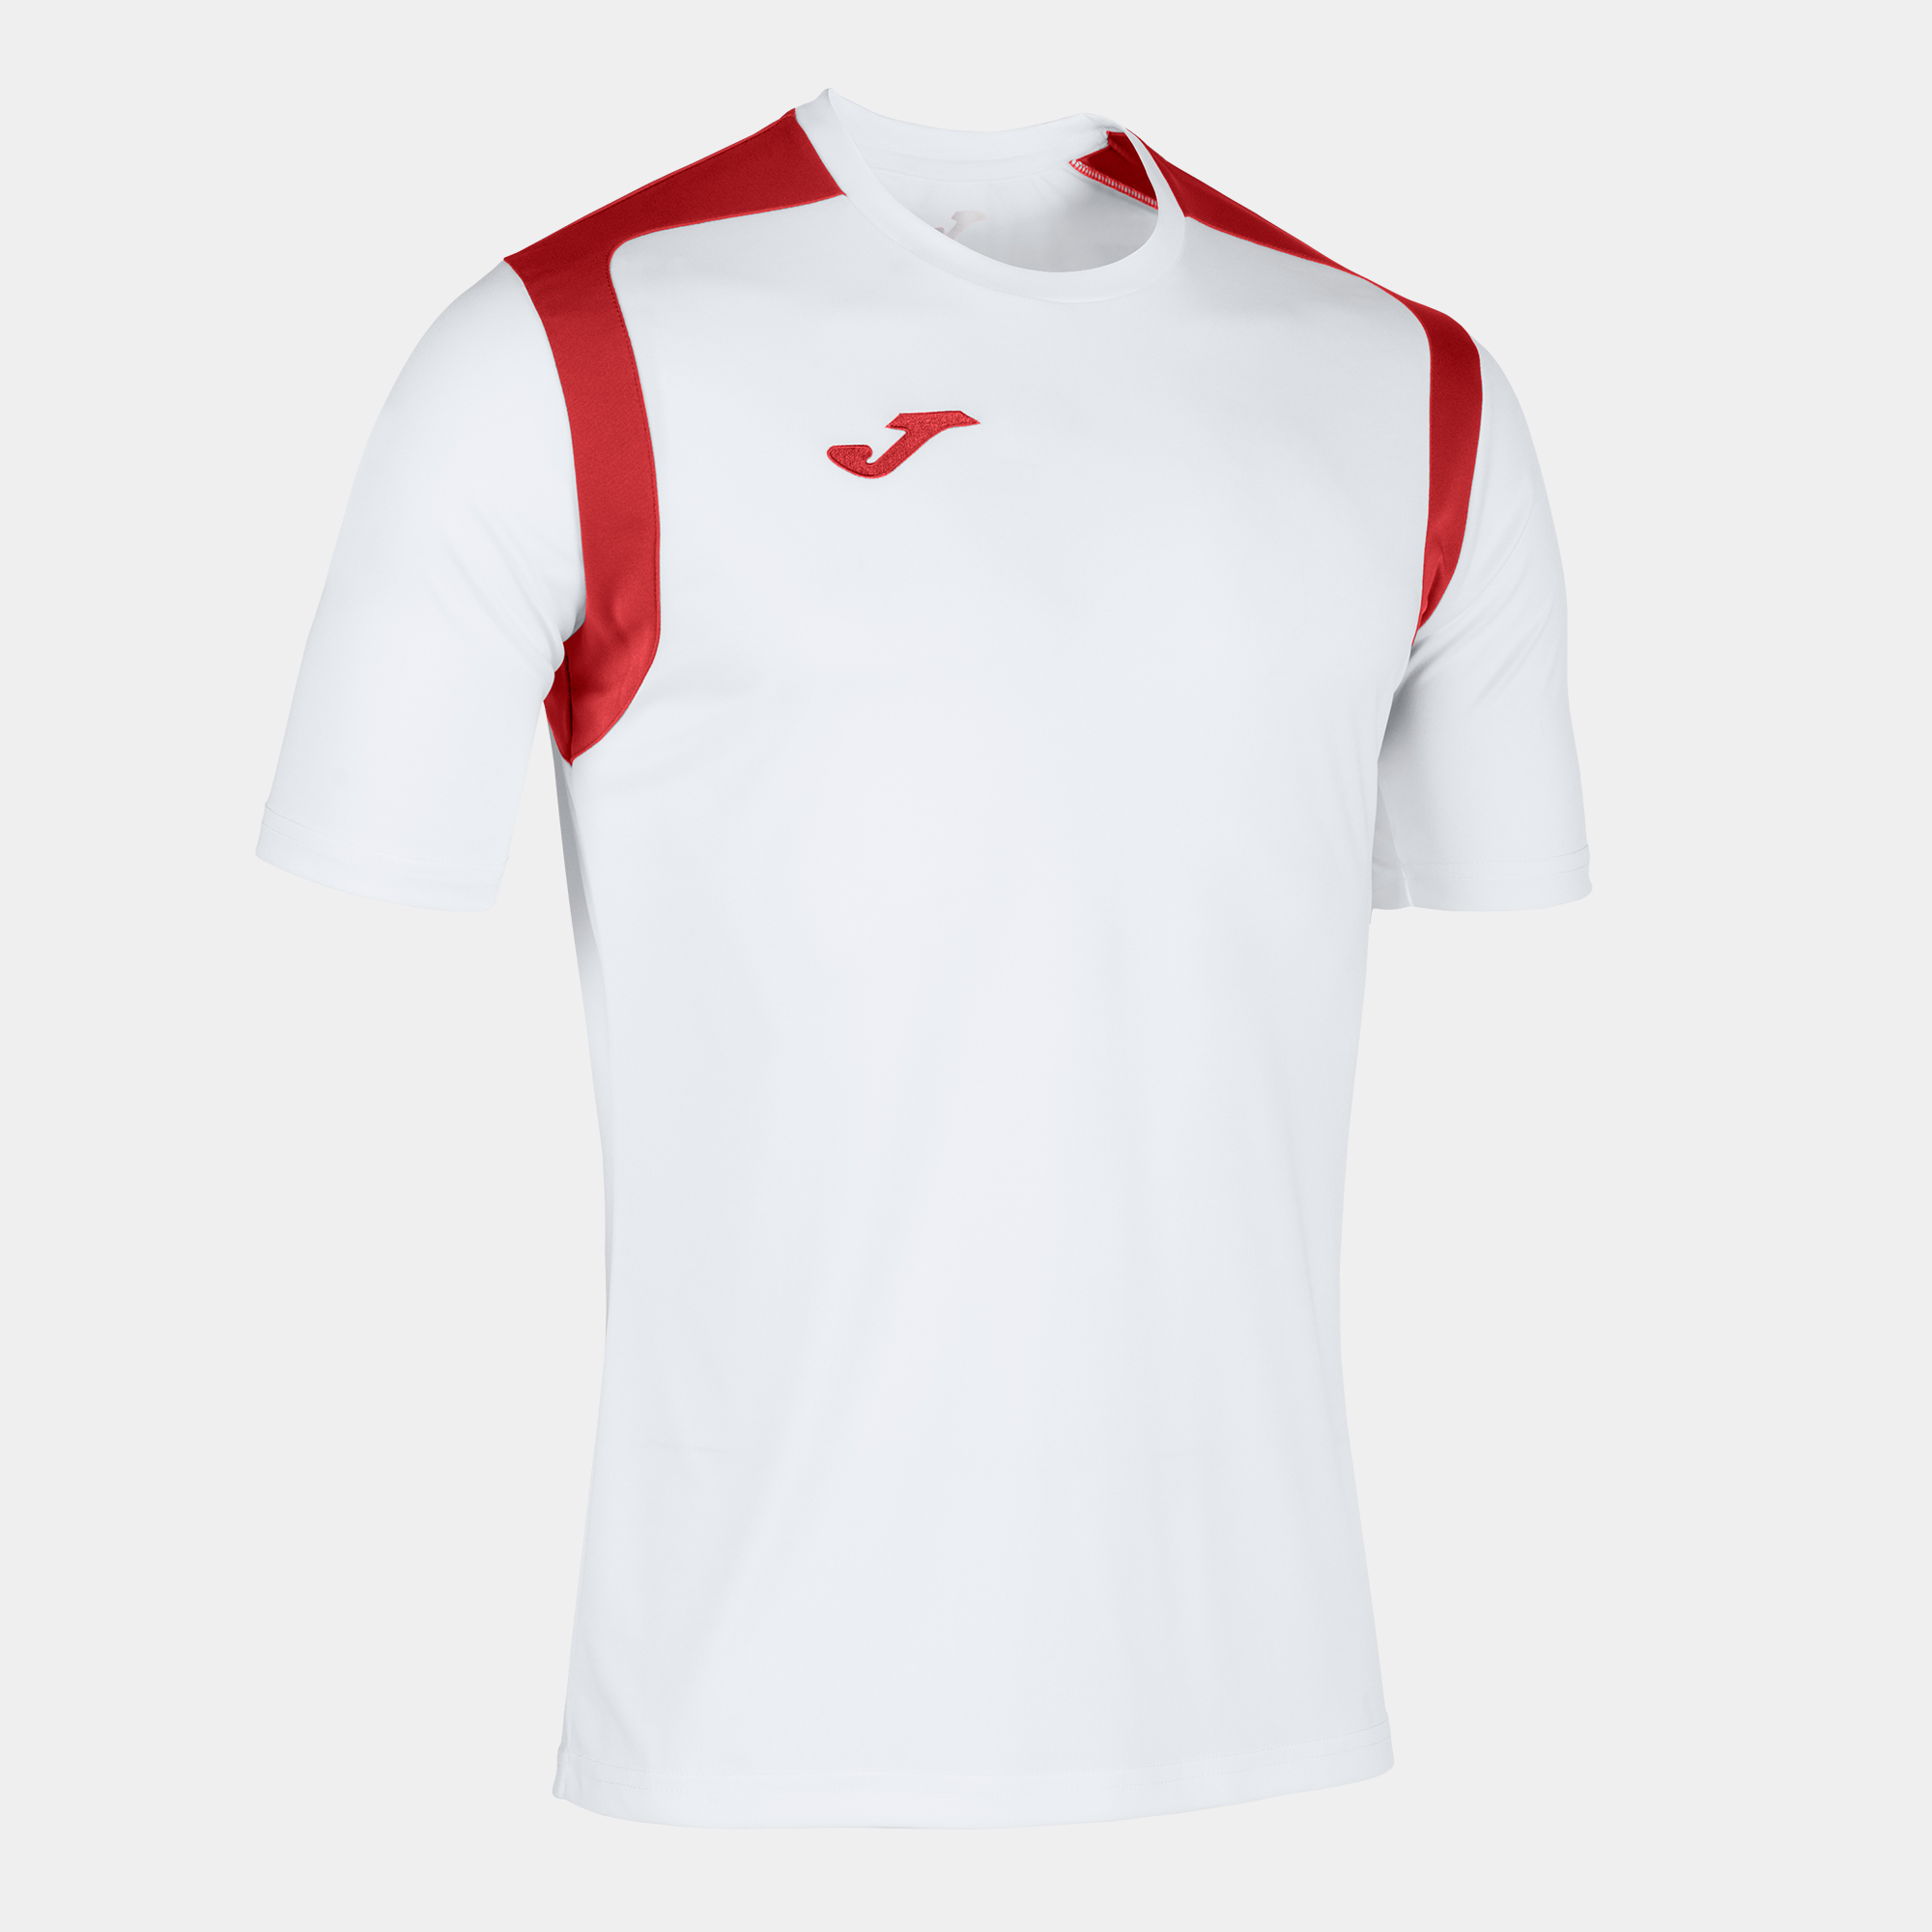 Camiseta Manga Corta Joma Championship V Blanco Rojo - blanco-rojo - 